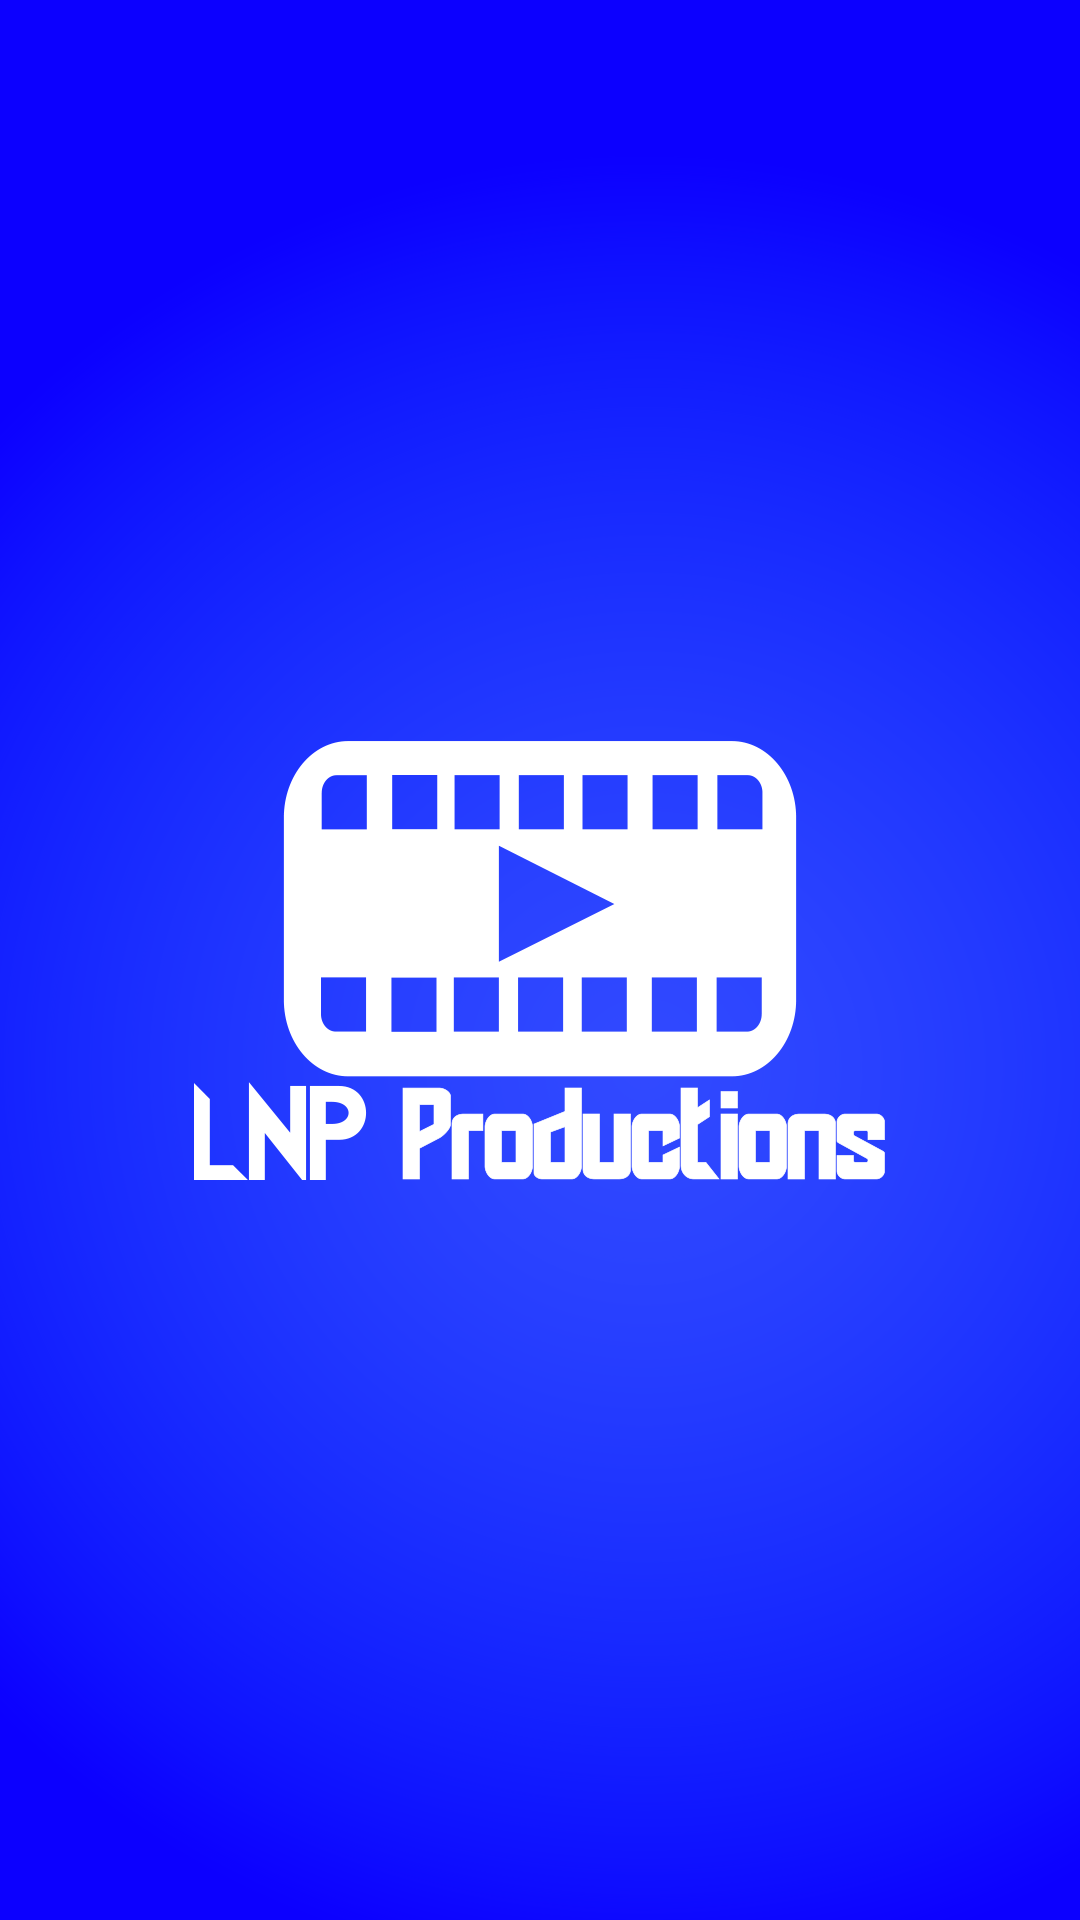 LNP Productions